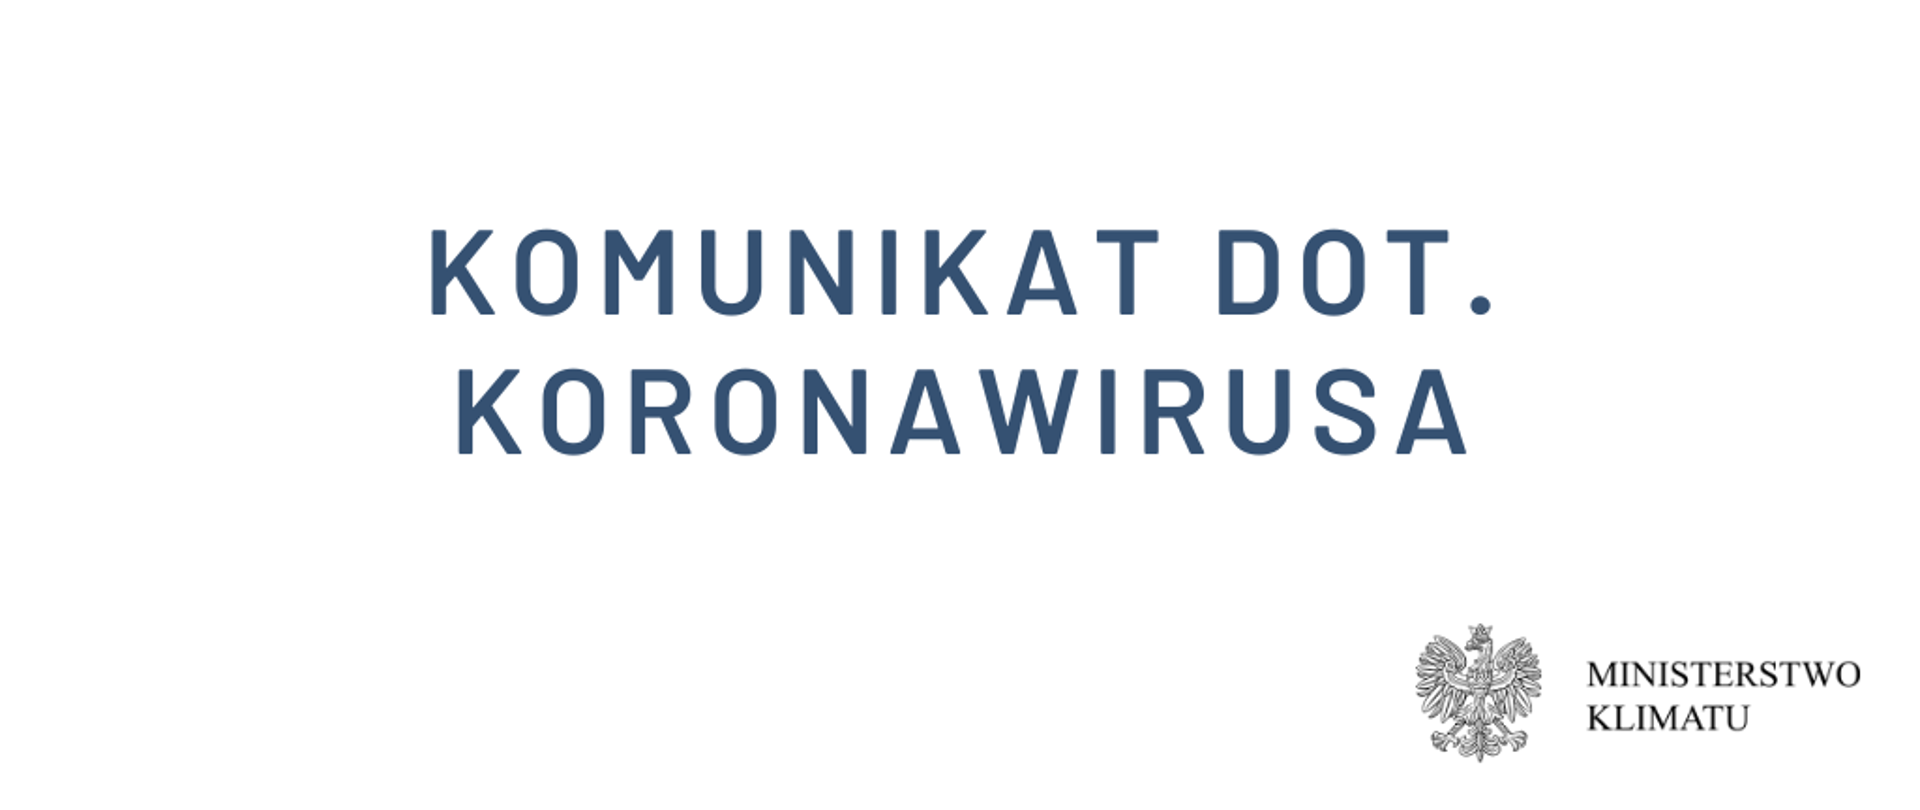 Komunikat dot. koronawirusa